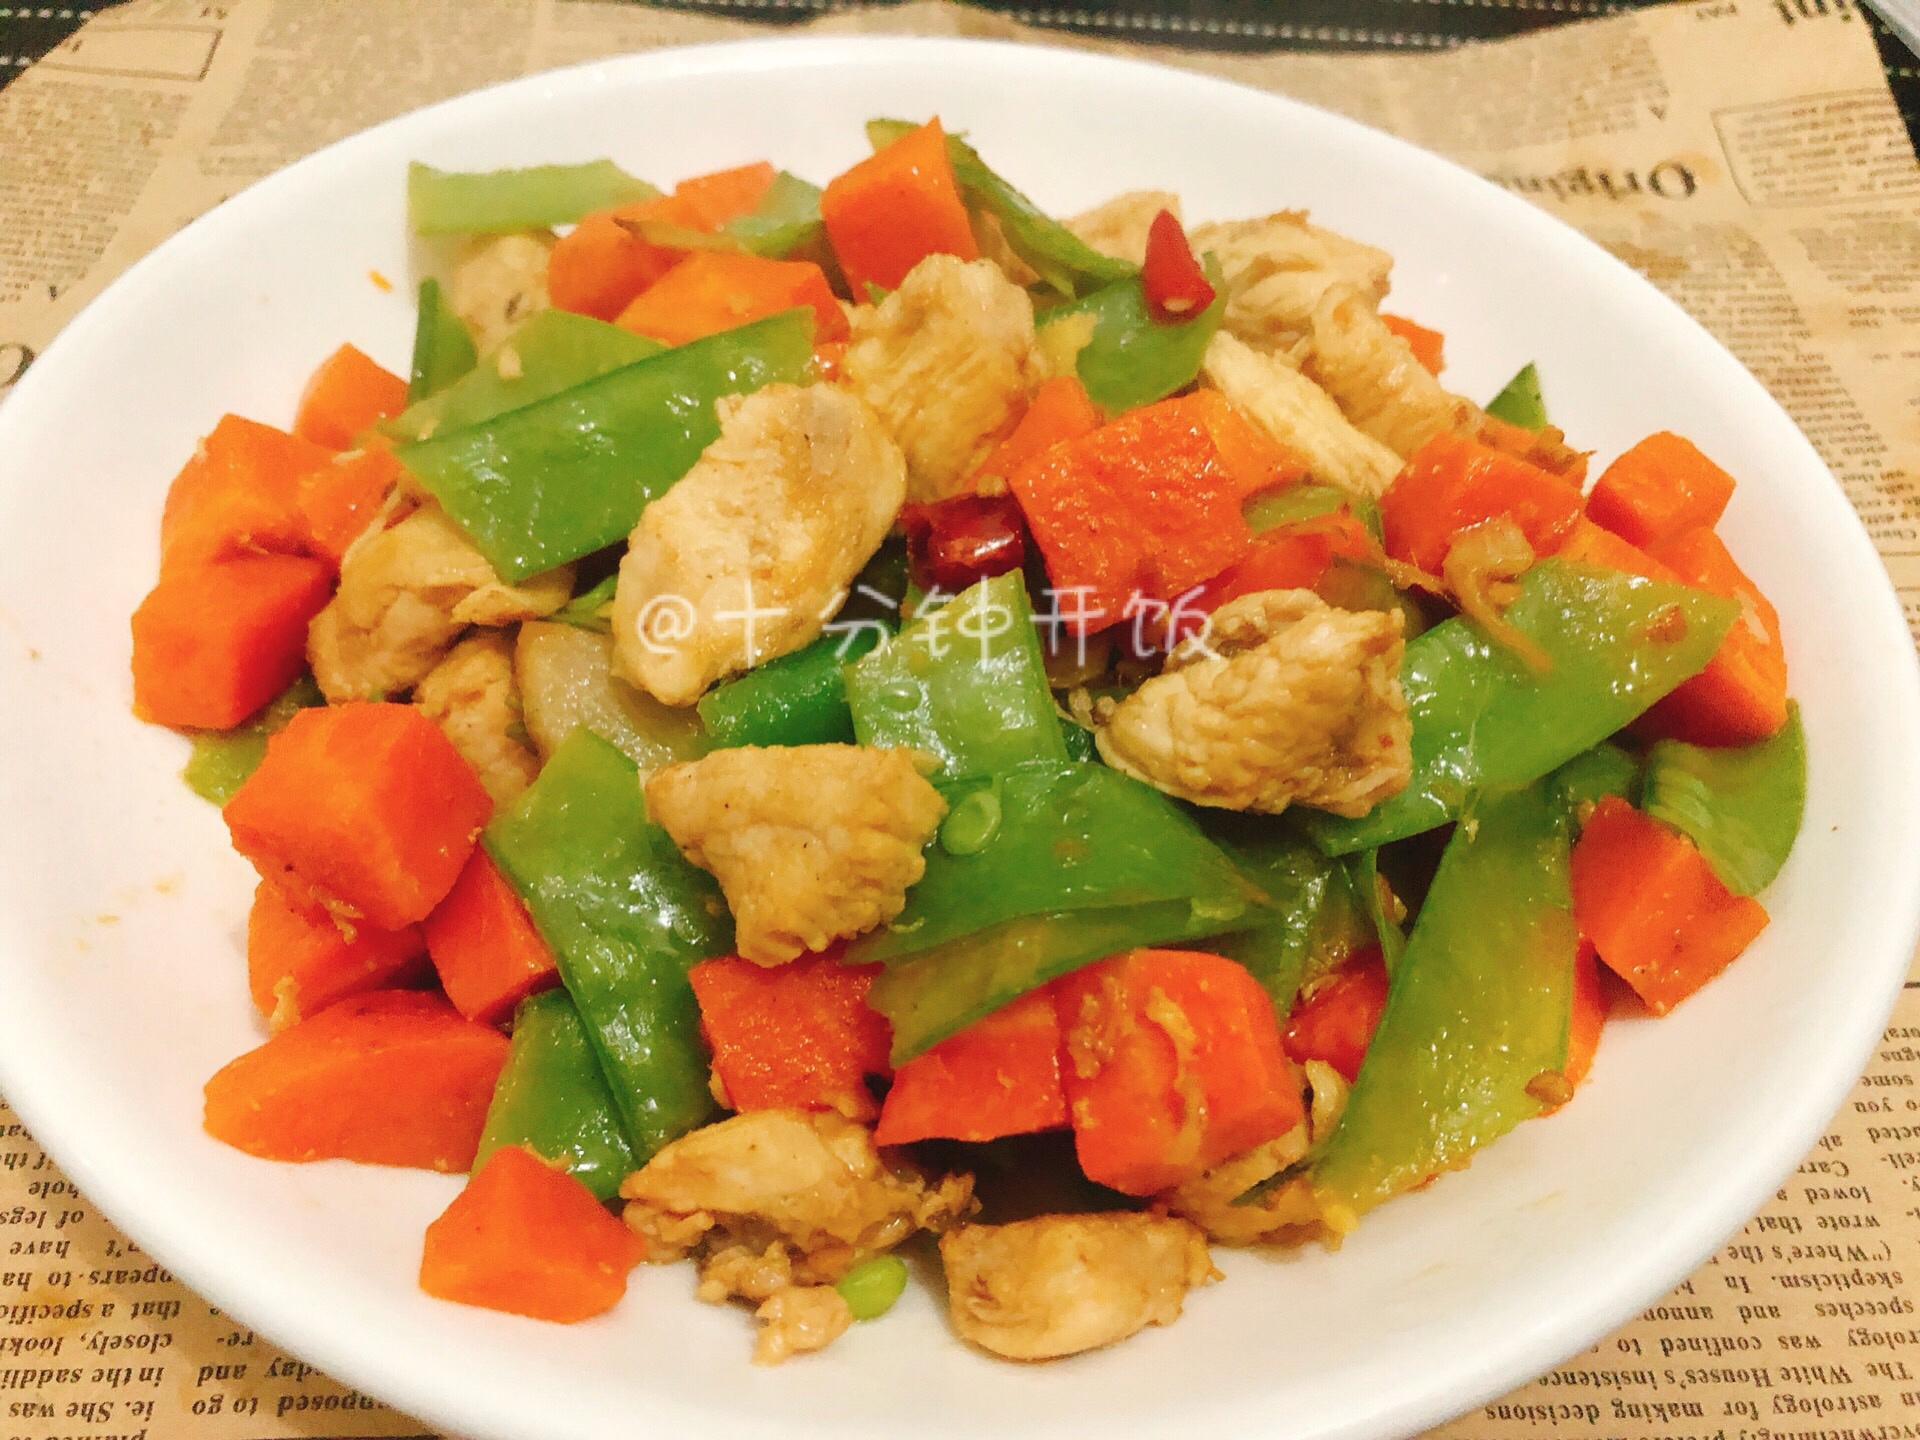 减肥最佳菜谱——鸡胸肉炒胡萝卜，简单易做，有荤有素，低油低脂。